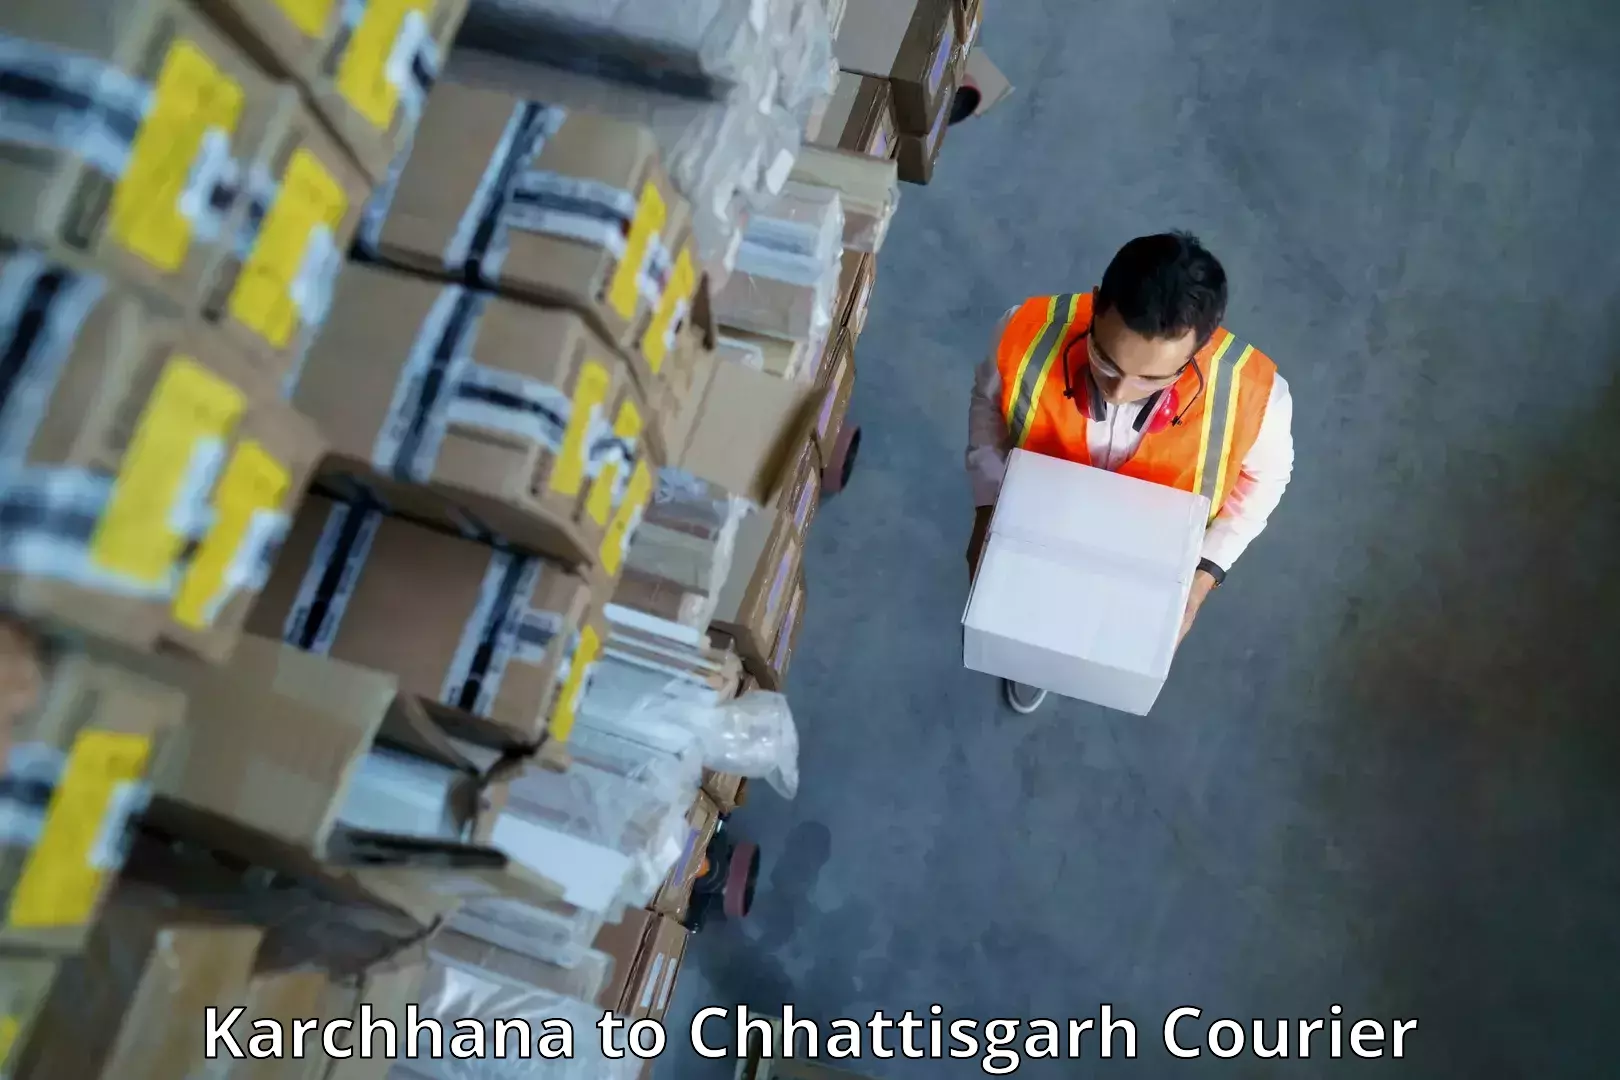 Courier service efficiency Karchhana to Bhatapara